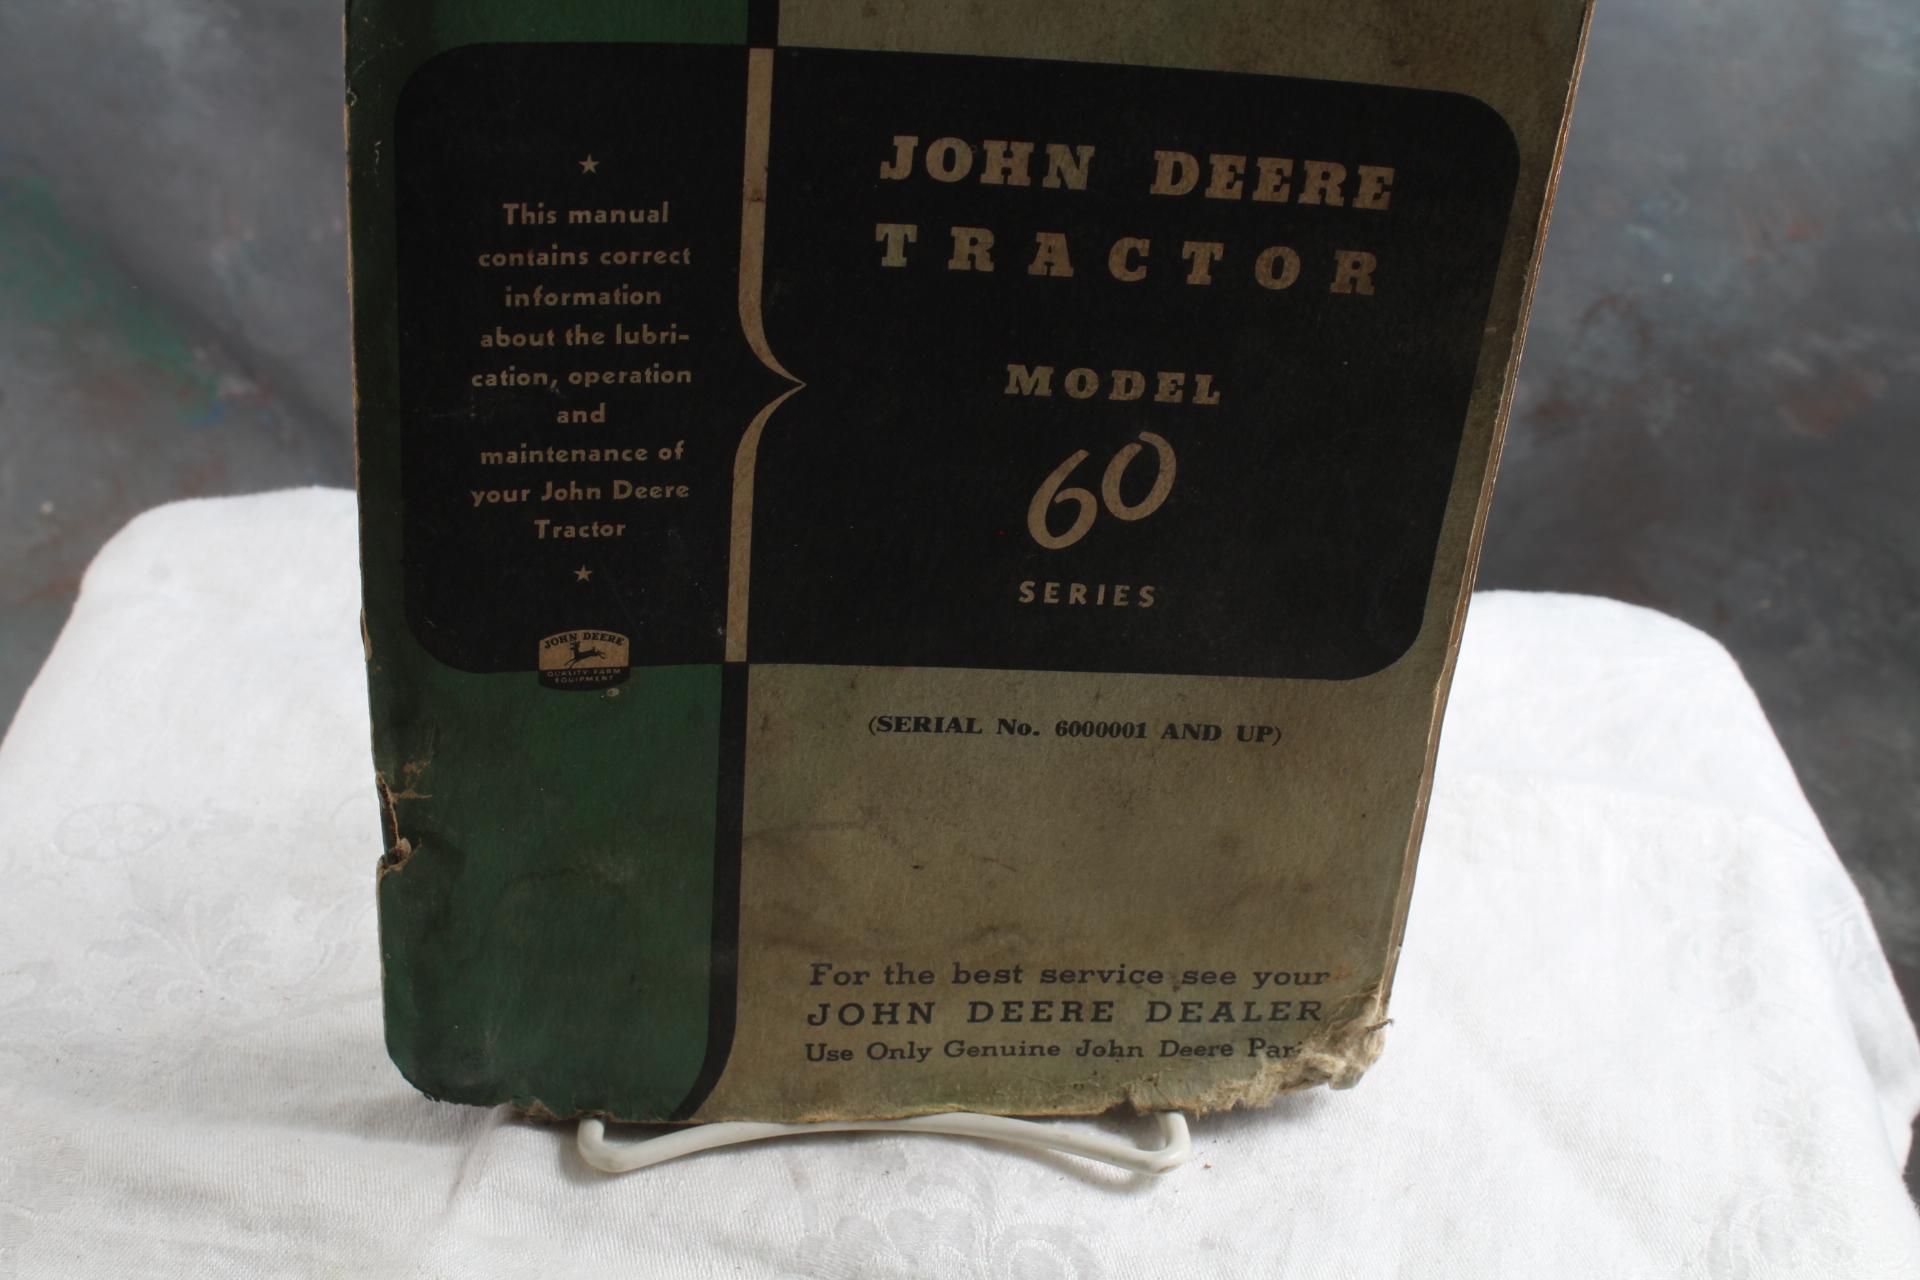 Vintage John Deere Tractor Model 60 Series Operator's Manual